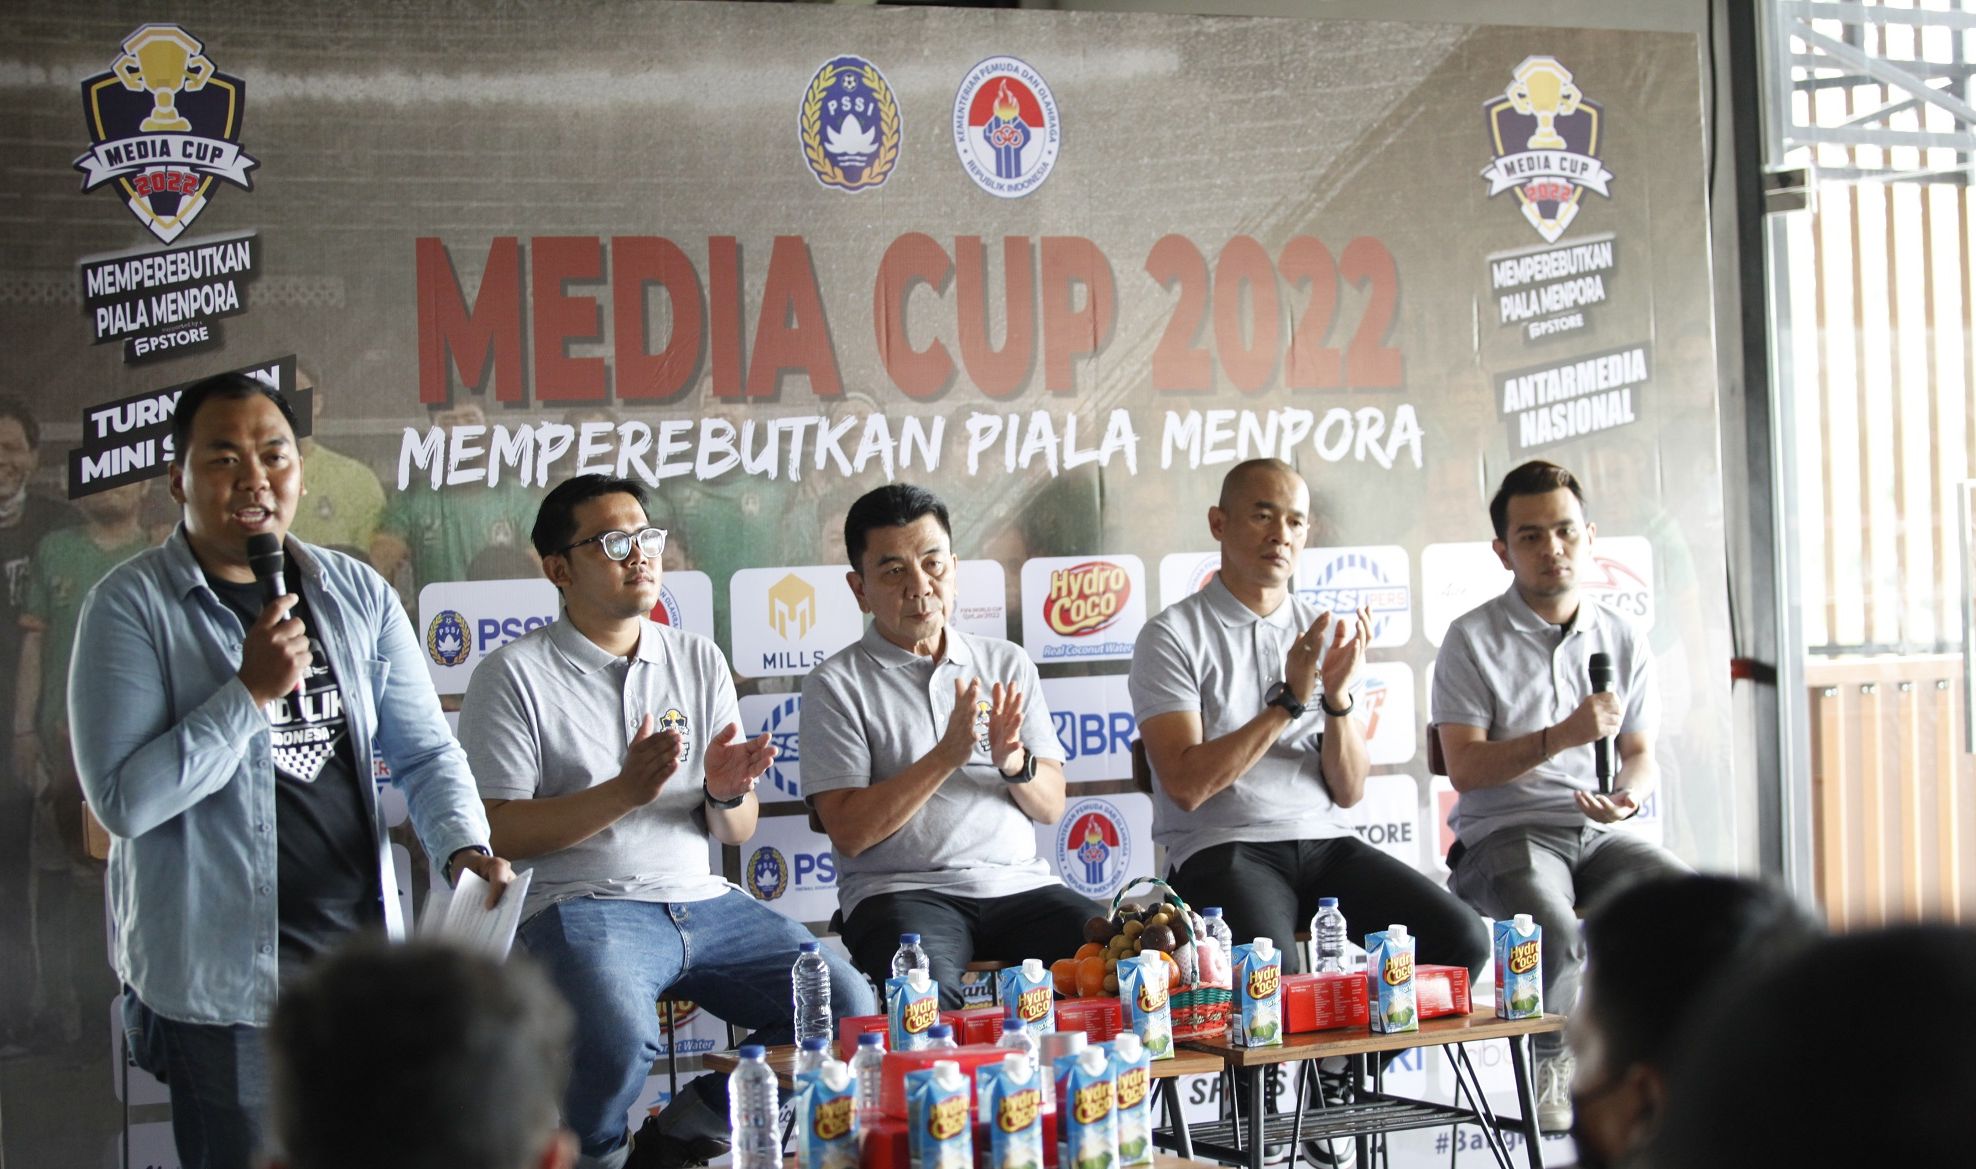 Sesi jumpa pers kegiatan Media Cup 2022 yang rencananya akan digelar pada 6-7 Oktober 2022 di Triboon Mini Soccer, Jakarta Selatan.